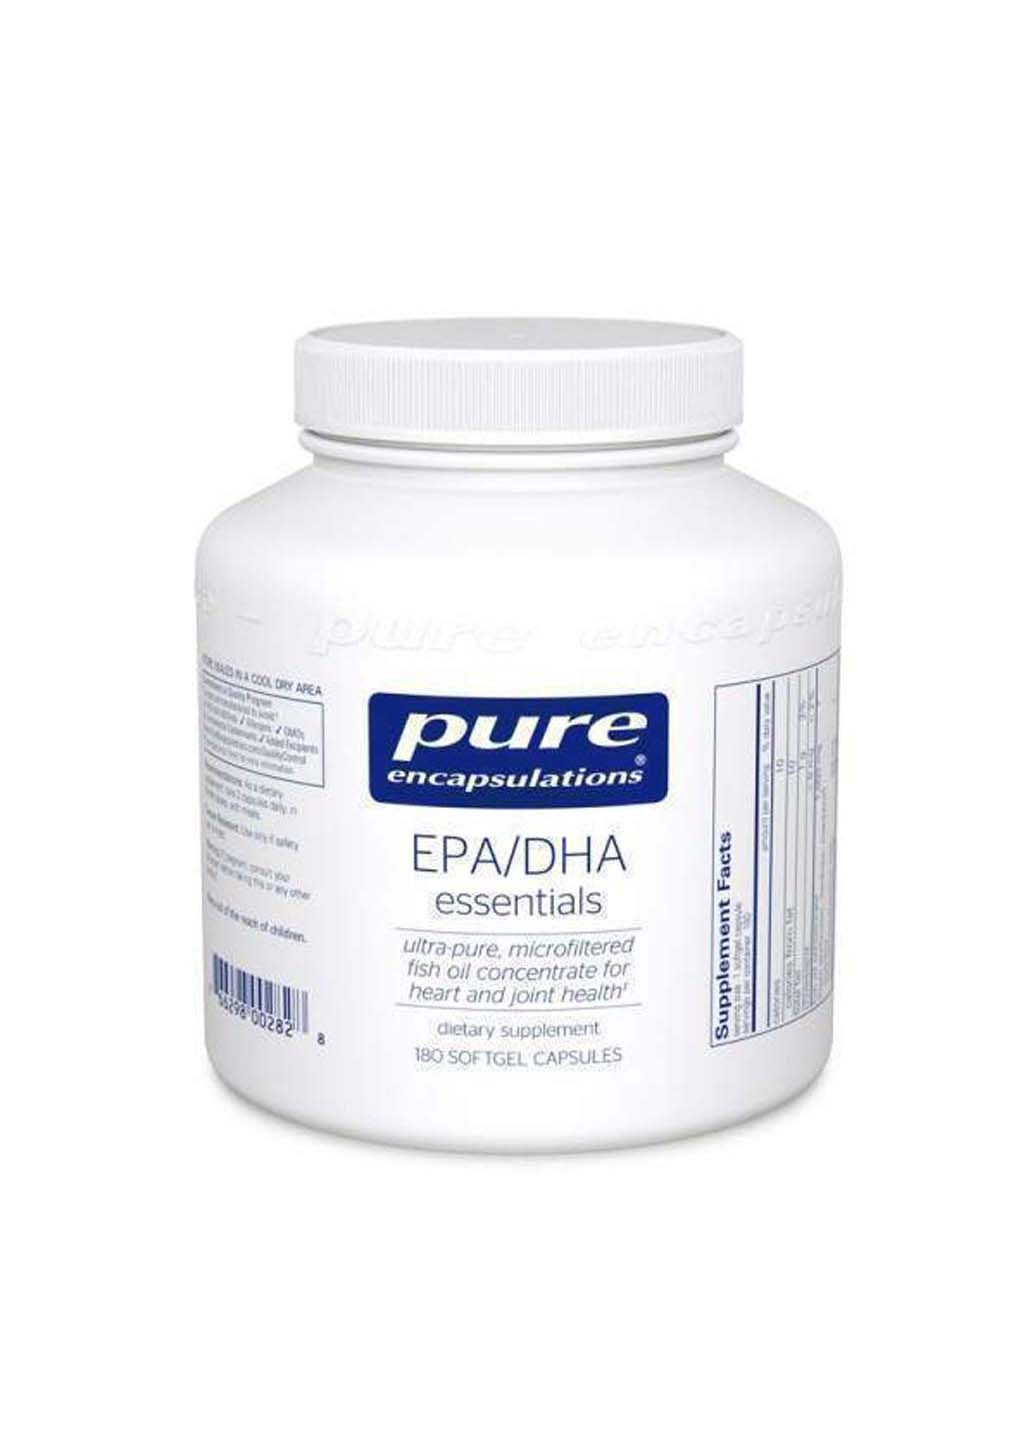 Основные ЭПК/ДГК EPA/DHA essentials ультрачистый молекулярно-дистиллированный концентрат рыбьего жира 180 капсул Pure Encapsulations (256932078)